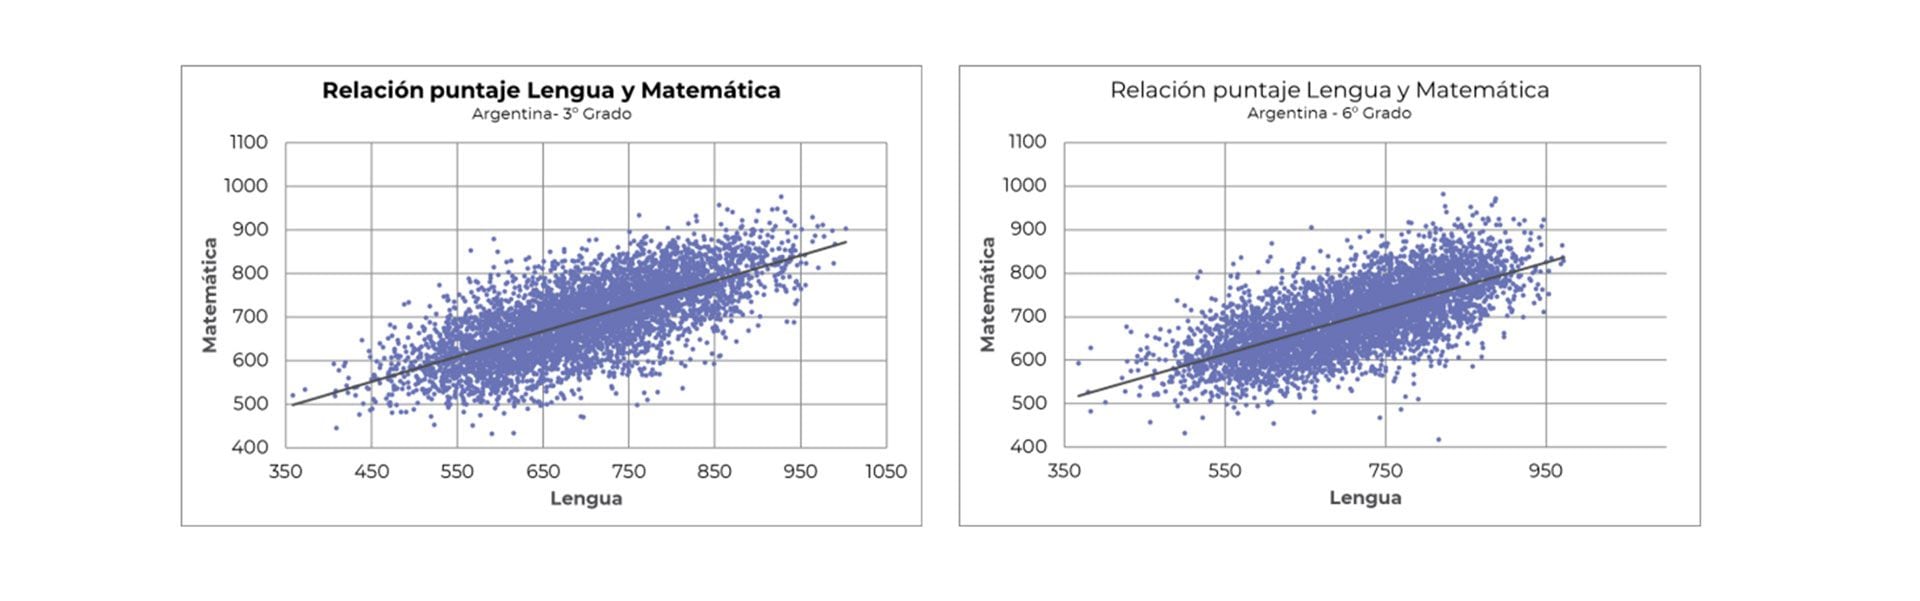 Análisis comparativo entre Argentina y Perú del rendimiento en Matemática